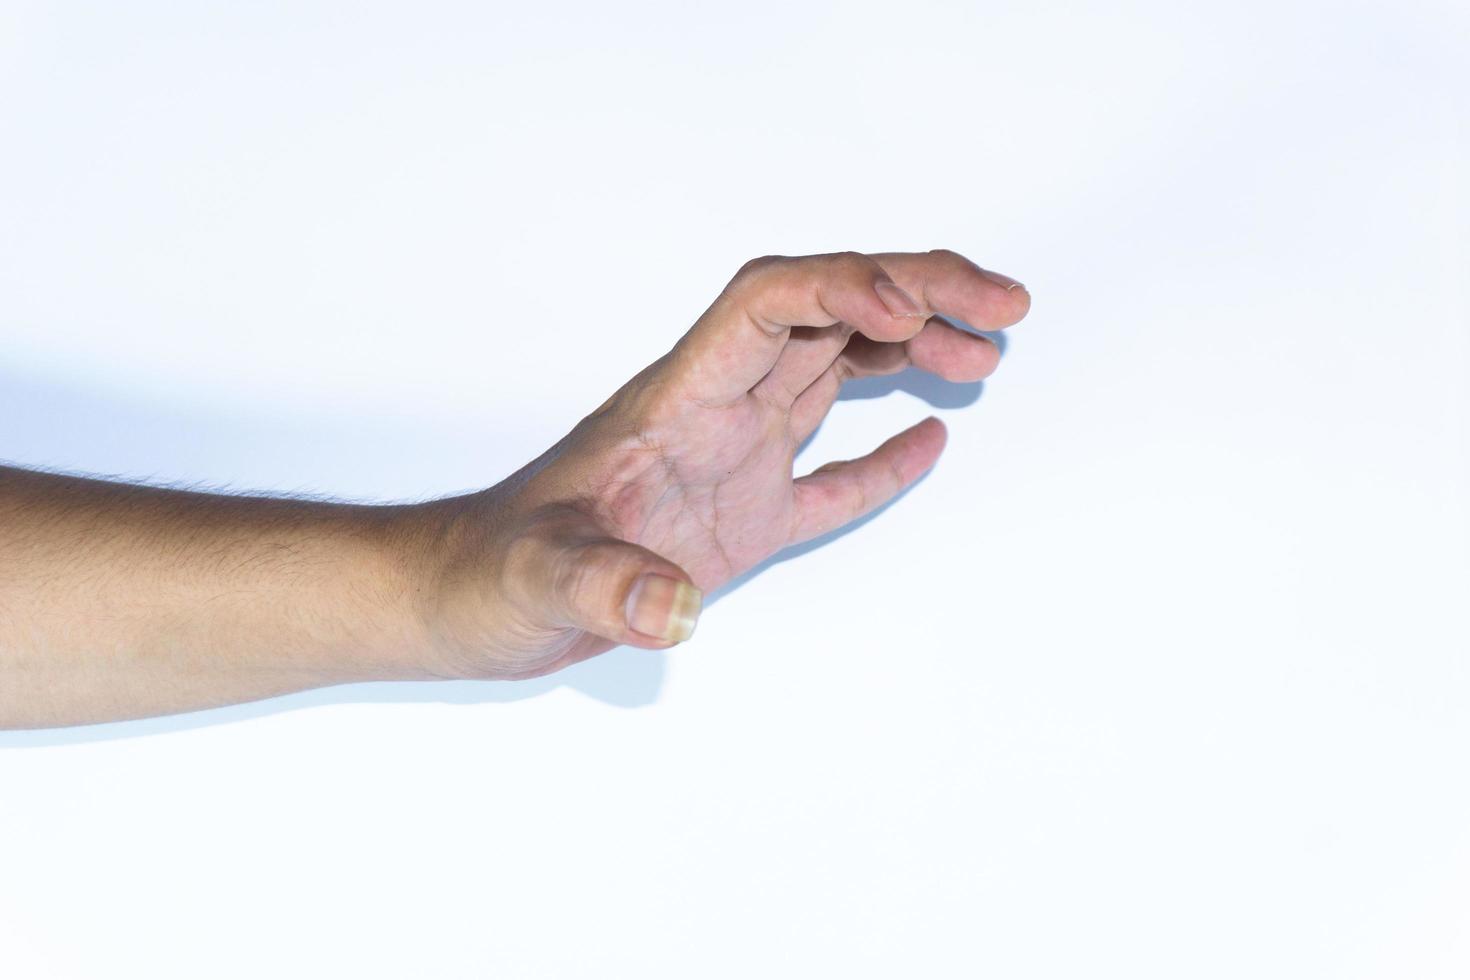 gestes de la main asiatiques masculins isolés sur fond blanc. photo